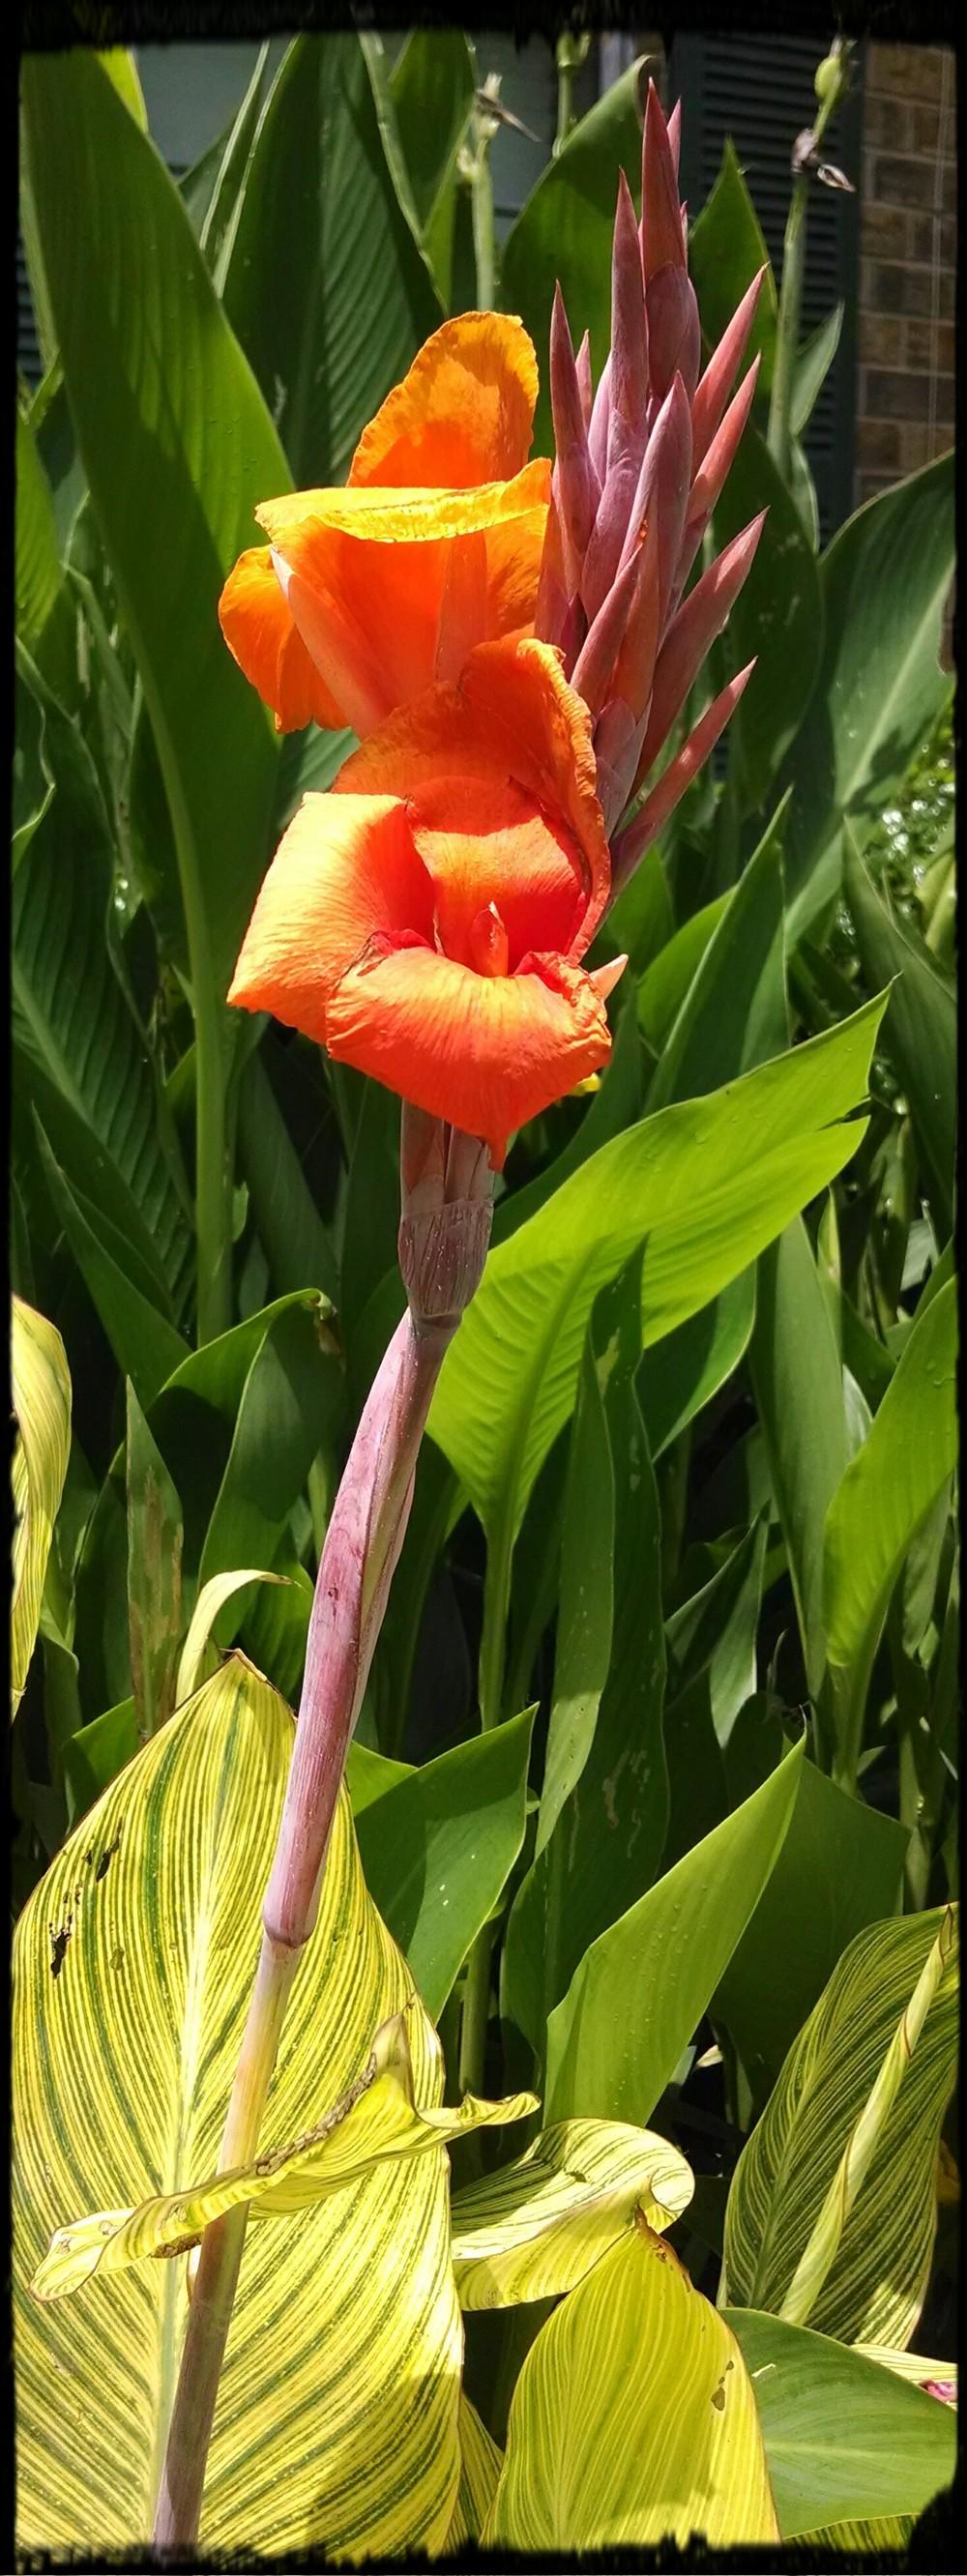 Photo of Canna Lily (Canna 'Pretoria') uploaded by sarahbugw